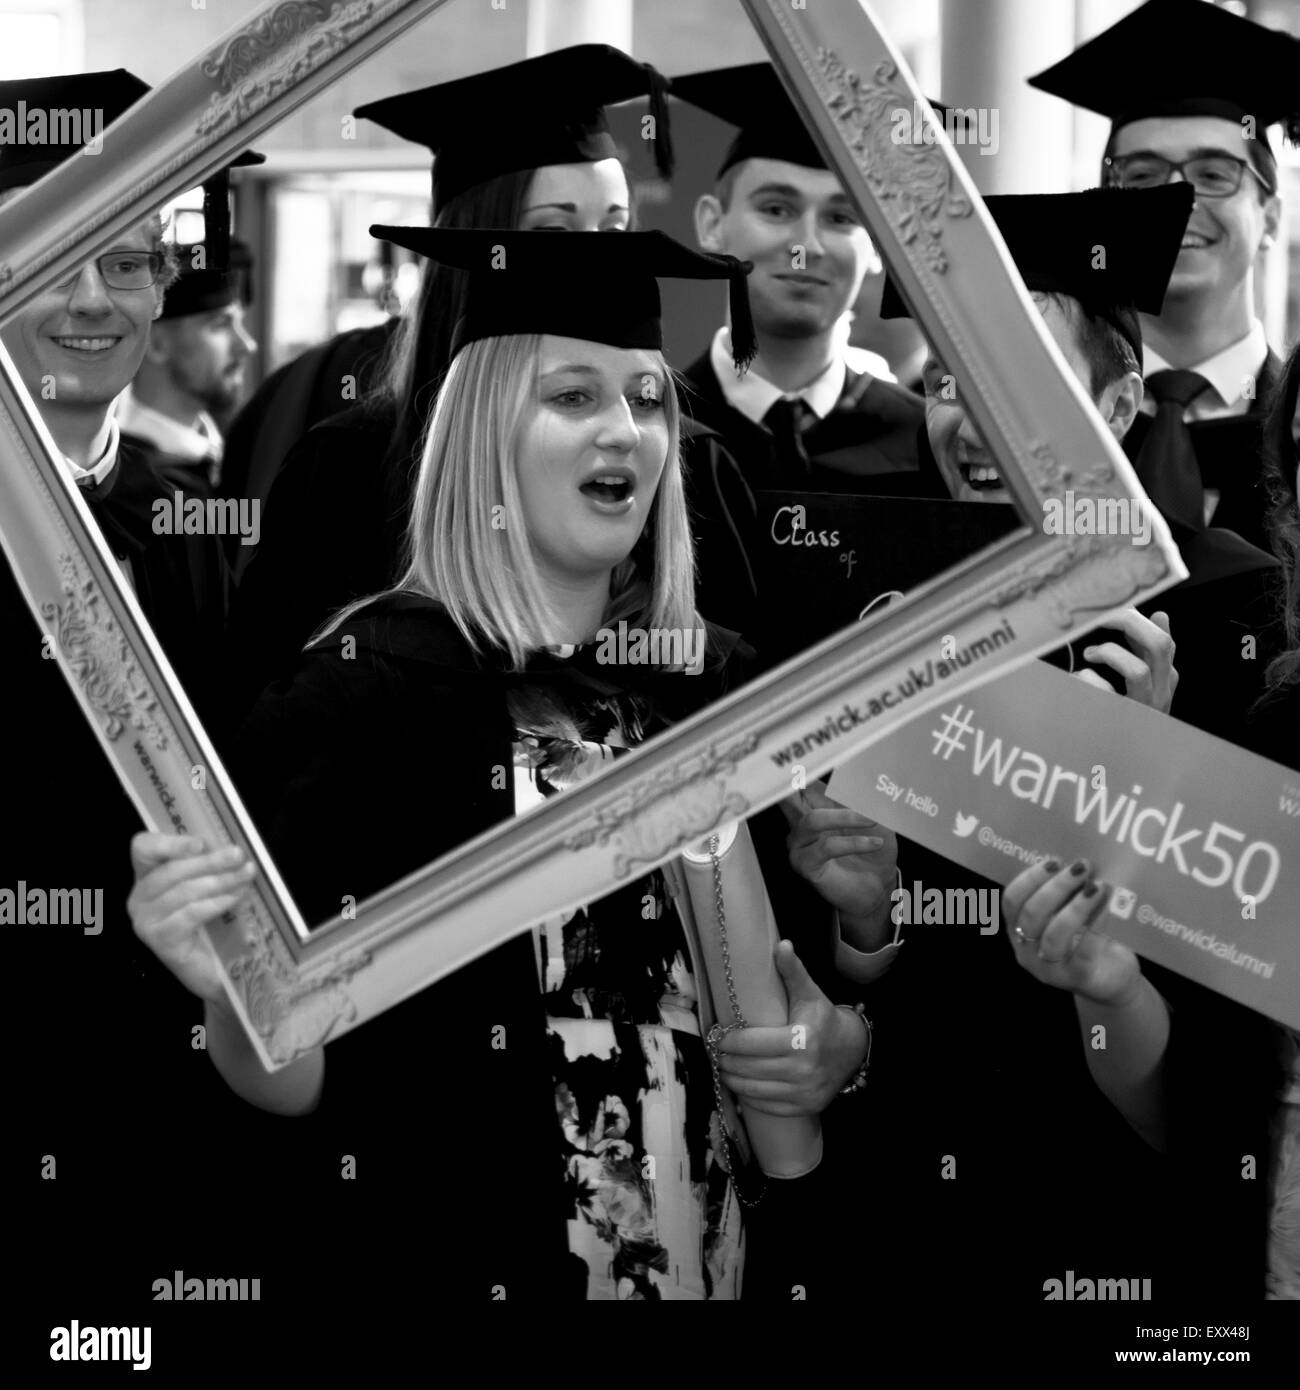 Graduation day at Warwick University Stock Photo